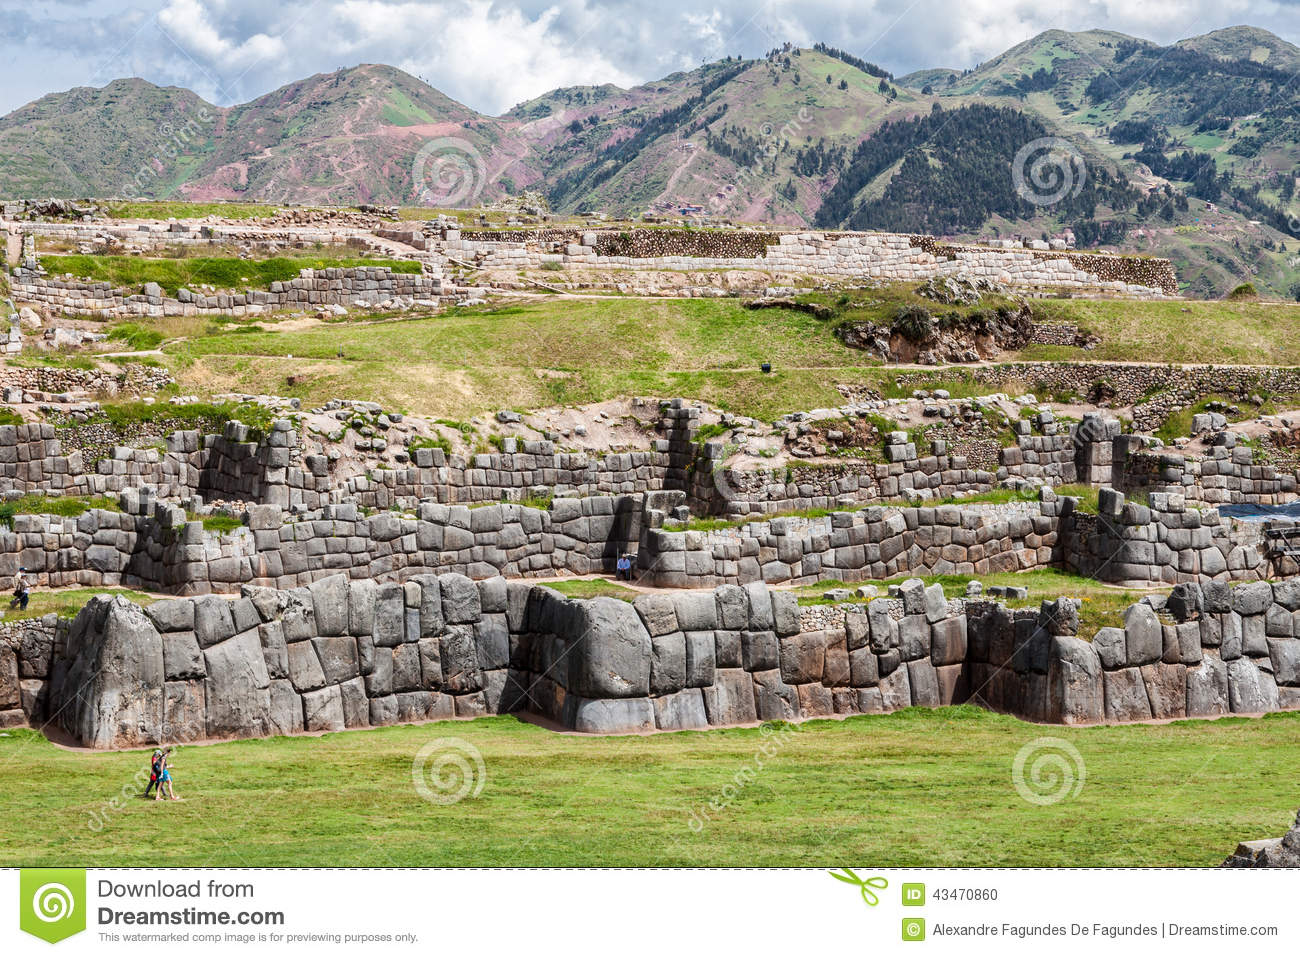 Images of Saksaywaman | 1300x957